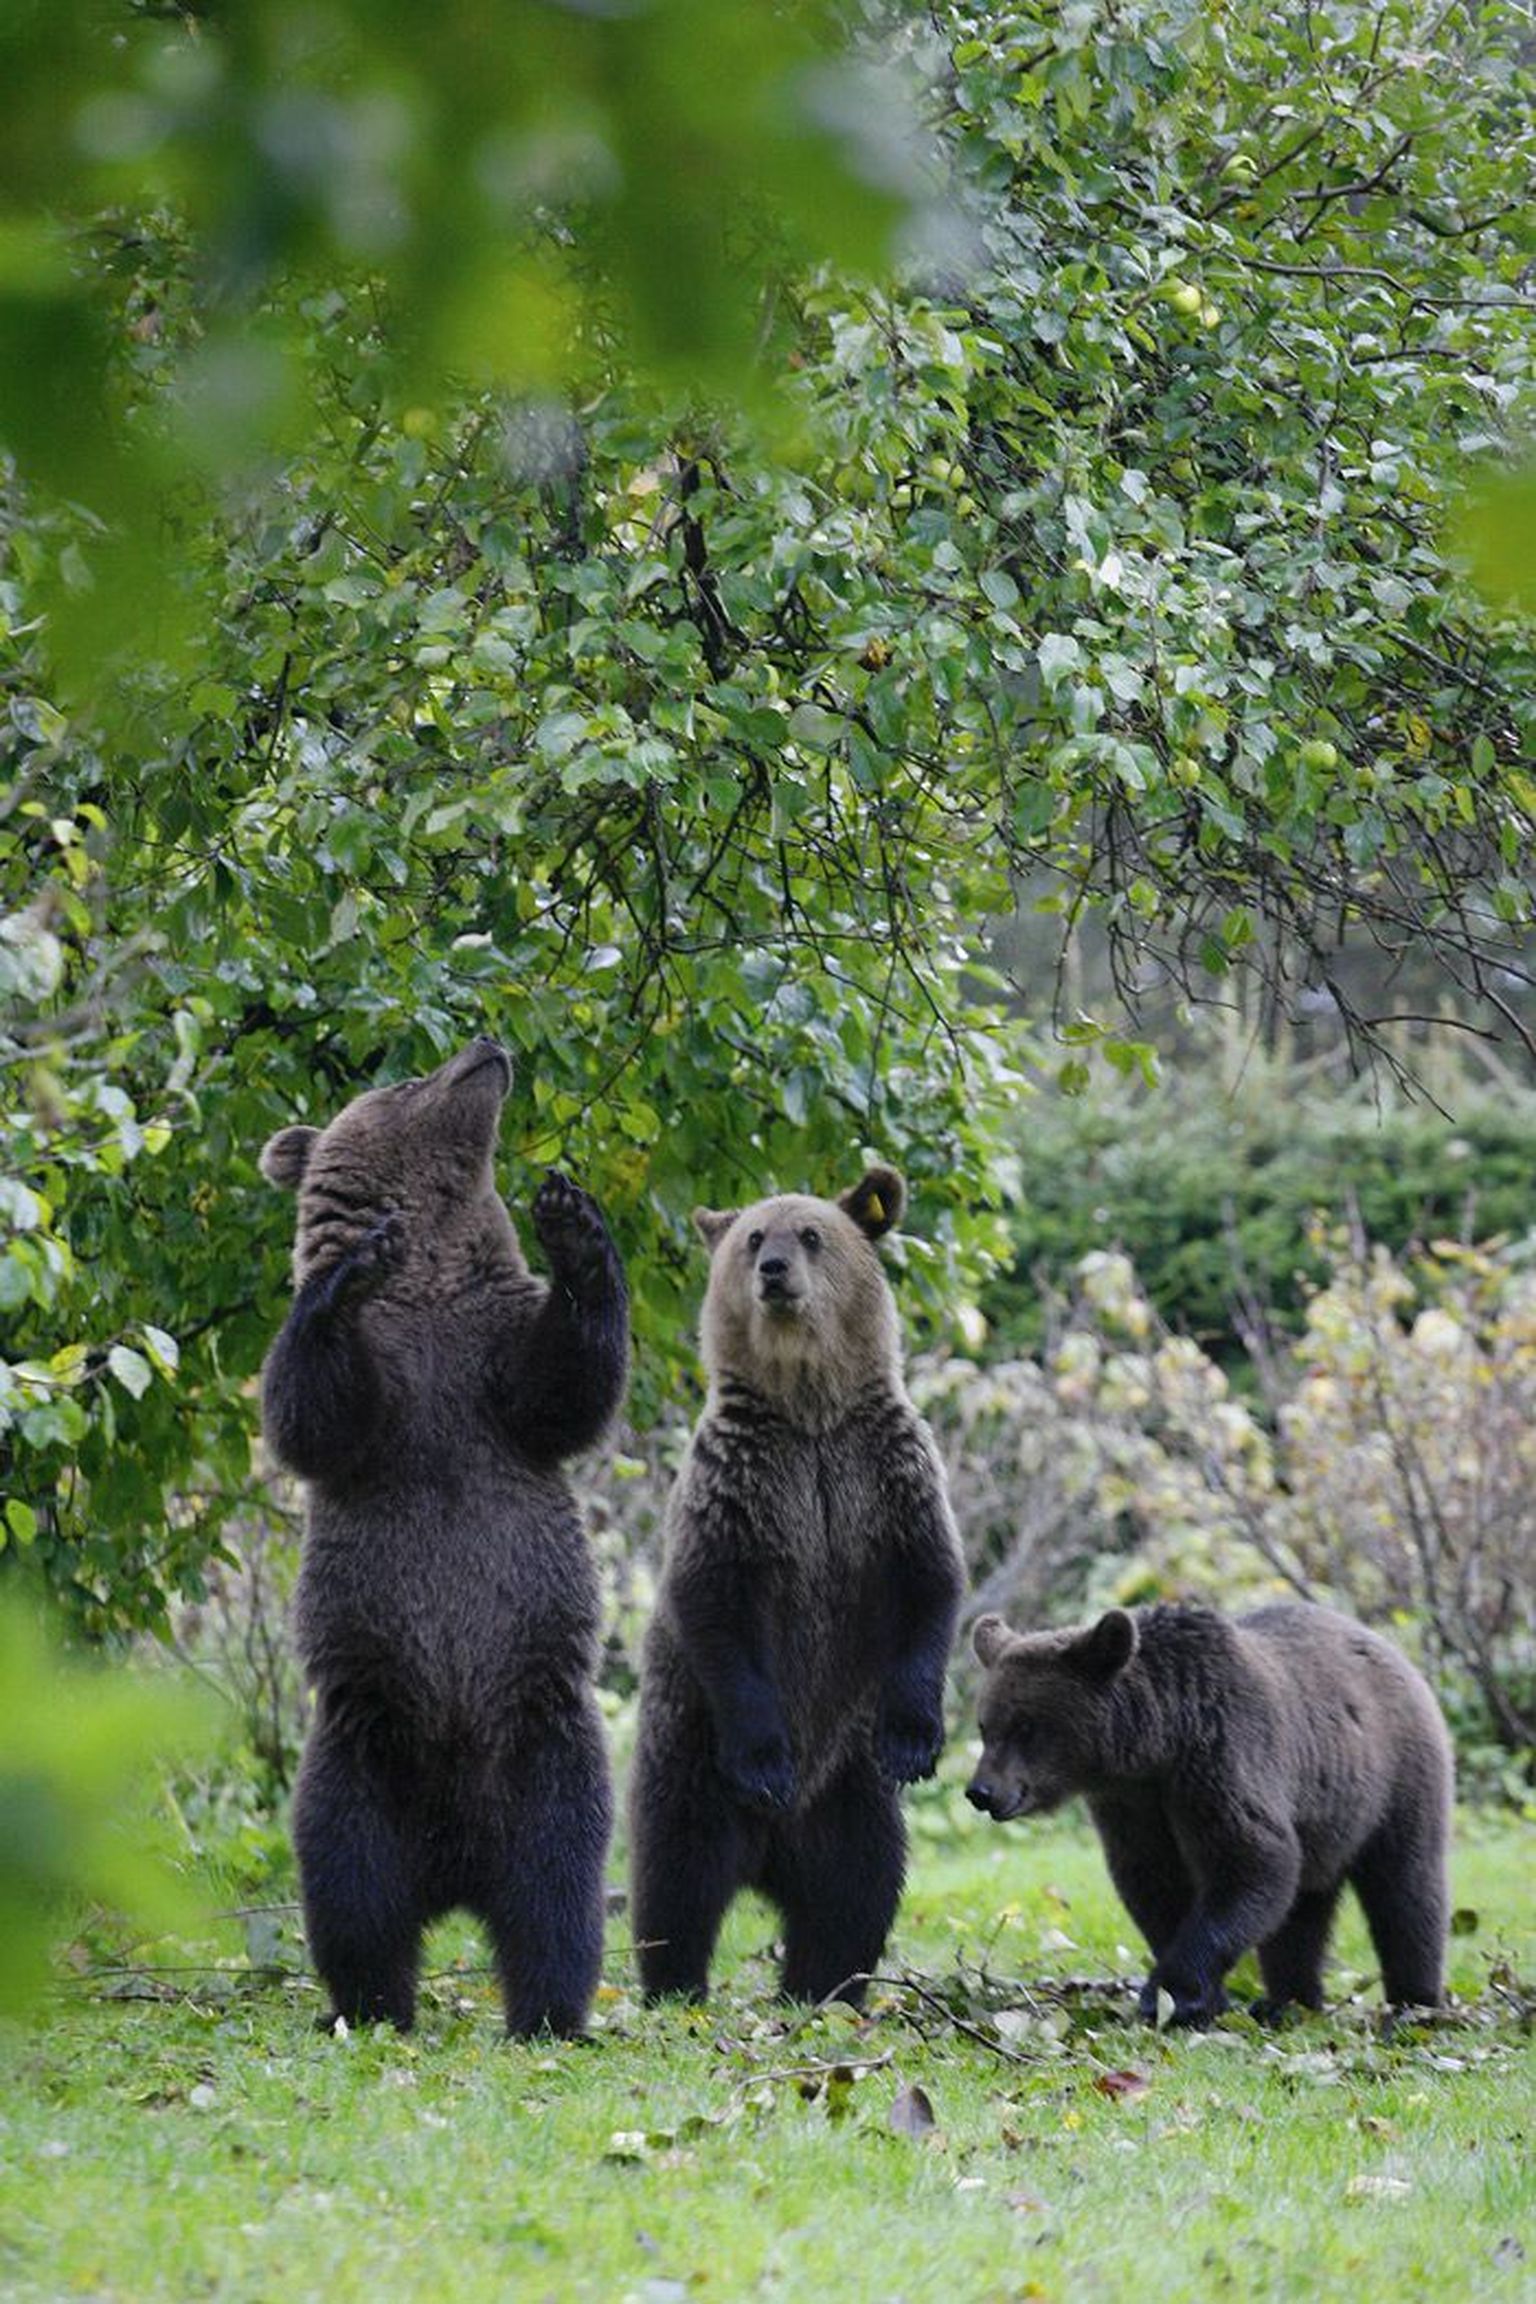 Kes soovib looduses karu näha? Eesti loodusturismiettevõtjad lubavad karuvaatlusele tulijatele, et
üheksal juhul kümnest saavad nad metsas mesikäpaga näost näkku kohtuda.